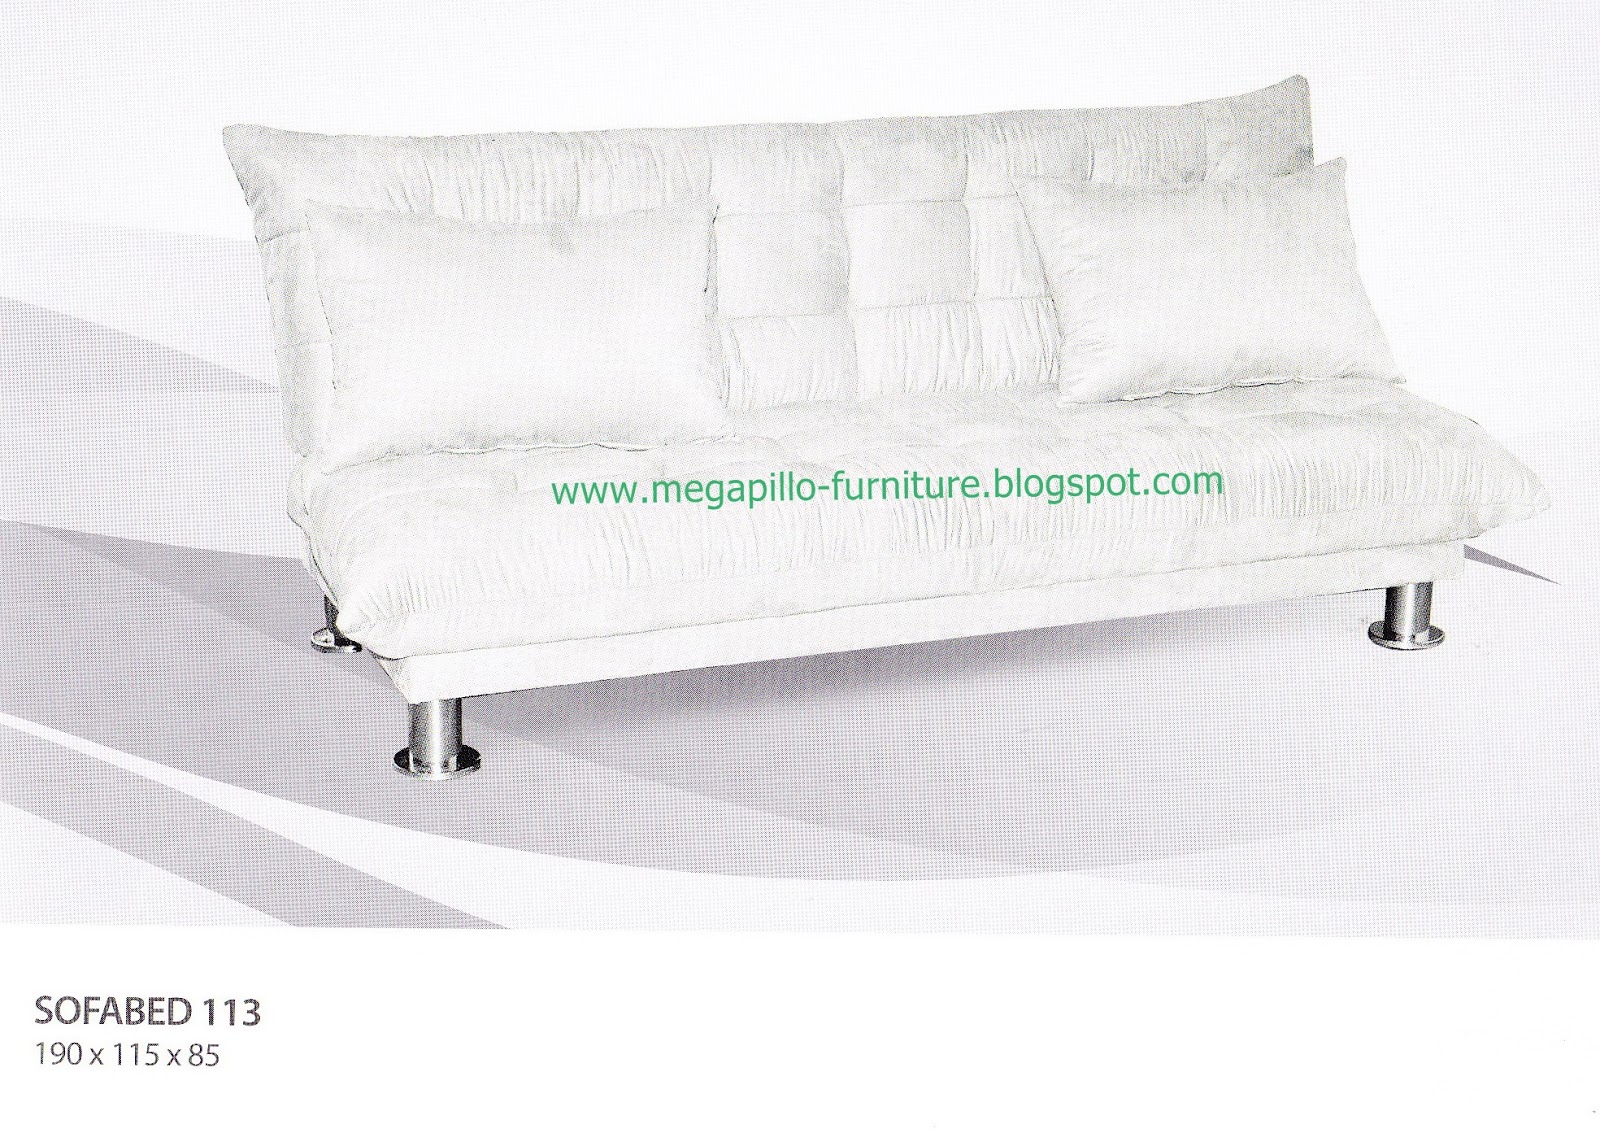 Megapillo Furniture & Spring Bed Online Shop: Sofa Morres 